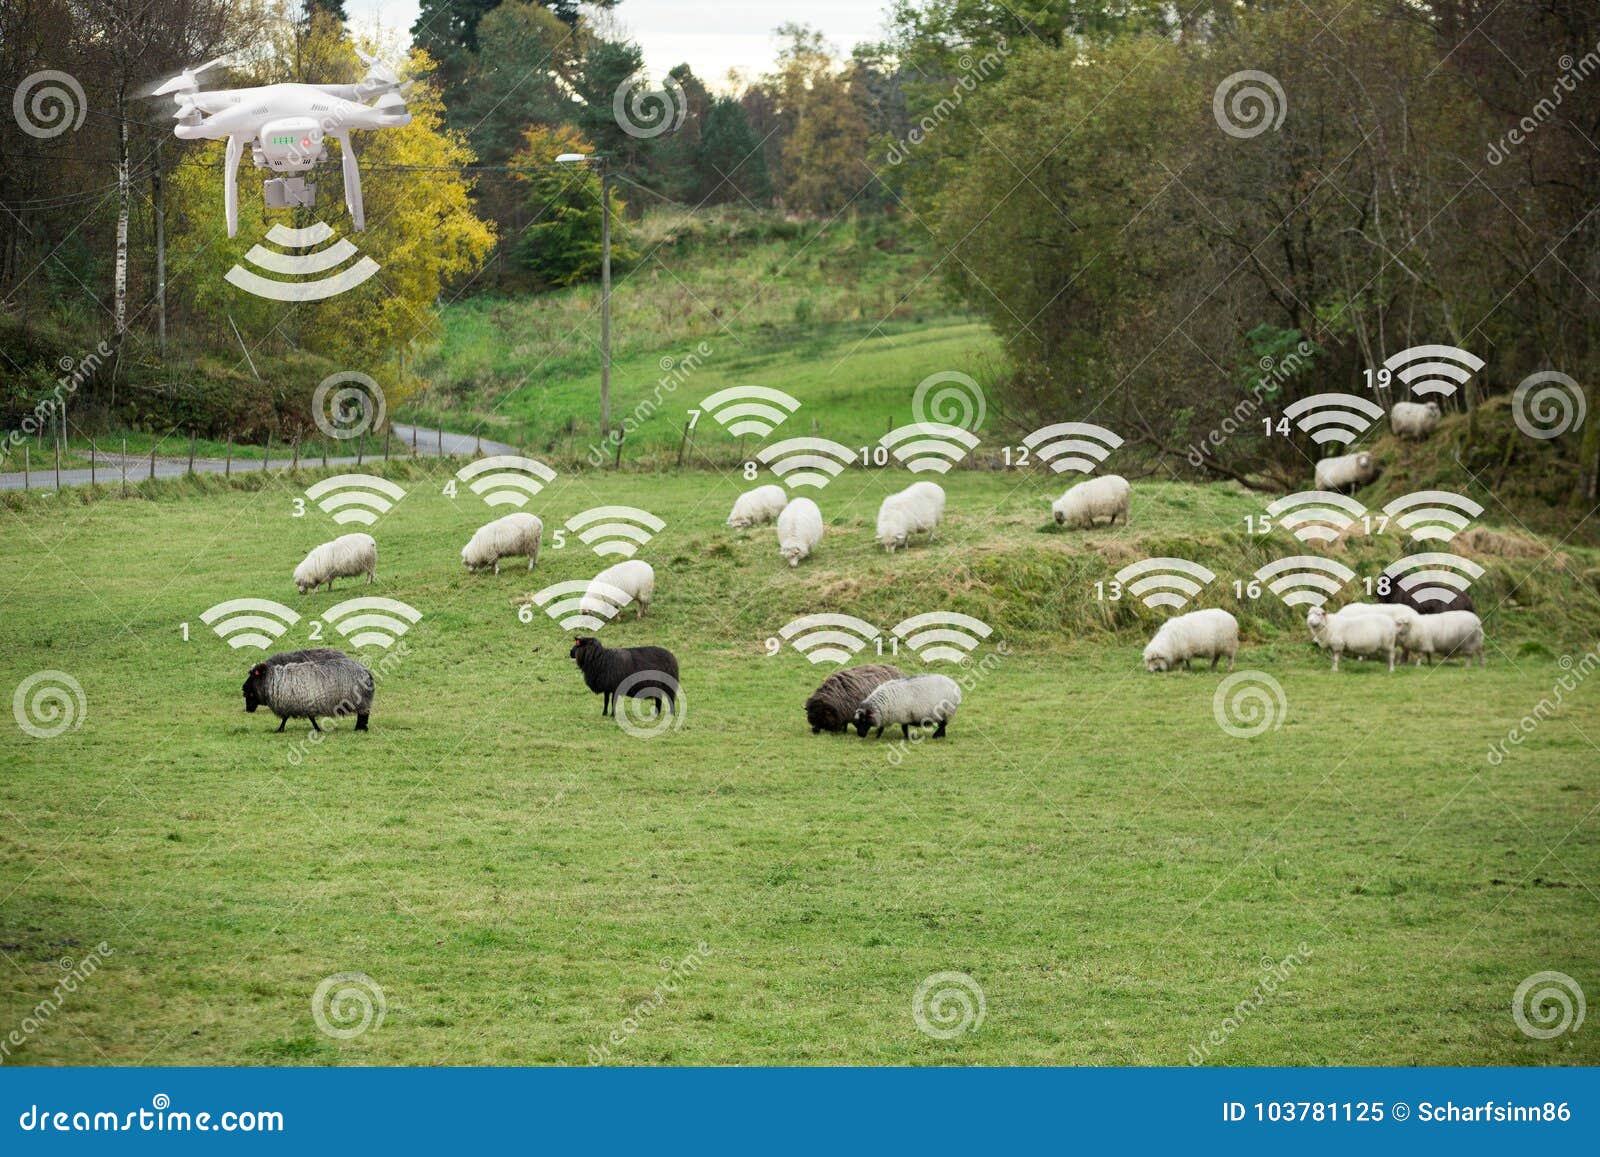 El abejón cuenta ovejas imagen de archivo. Imagen de digital - 103781125